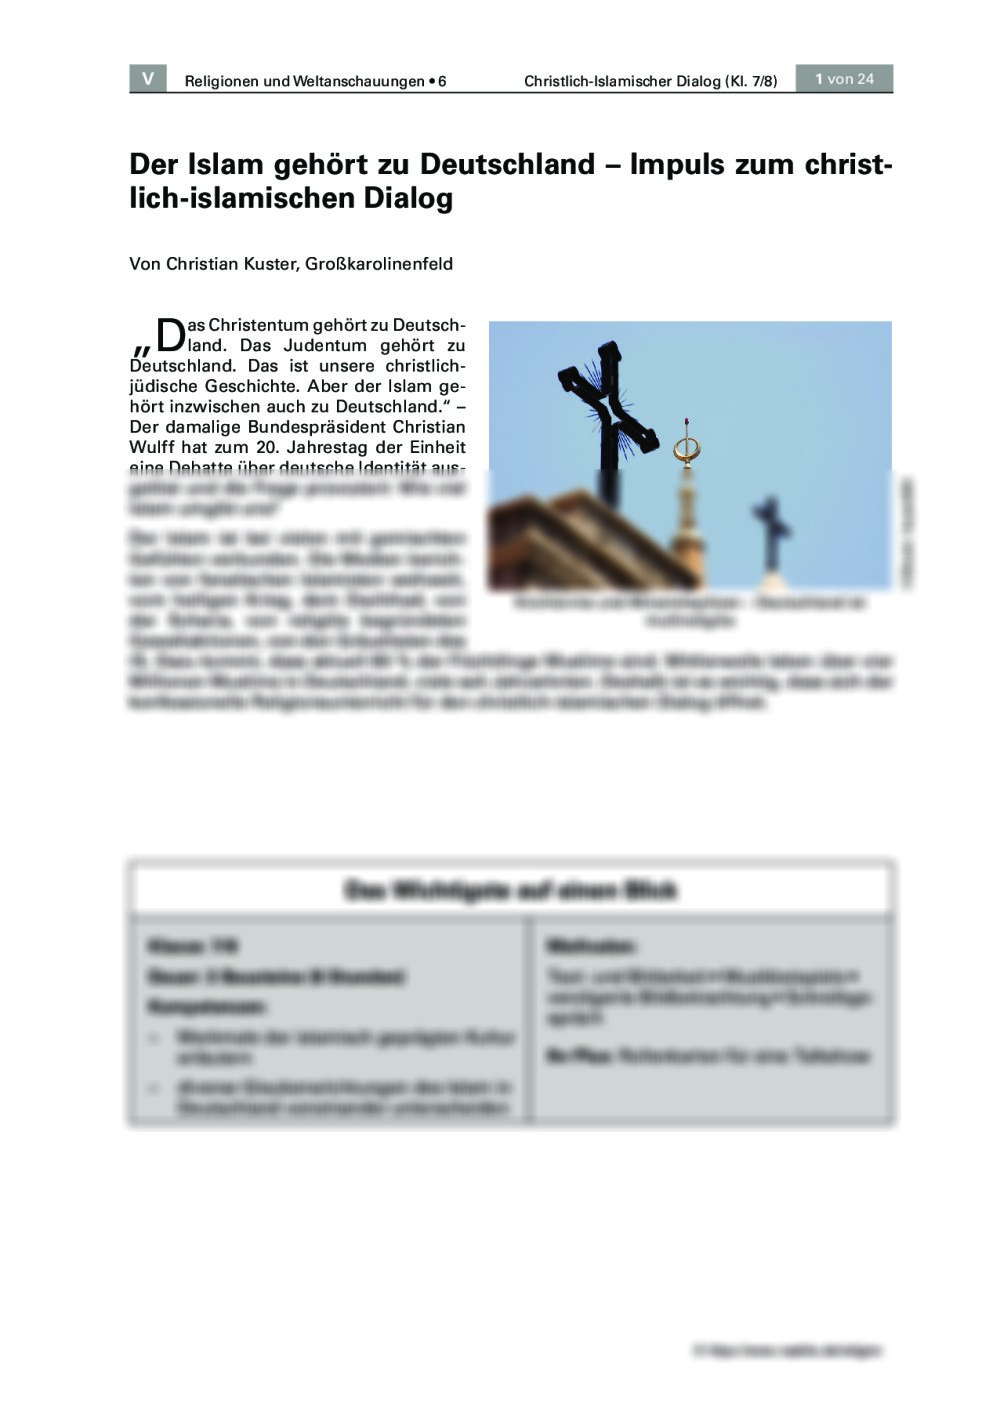 Impuls zum christlich-islamischen Dialog - Seite 1